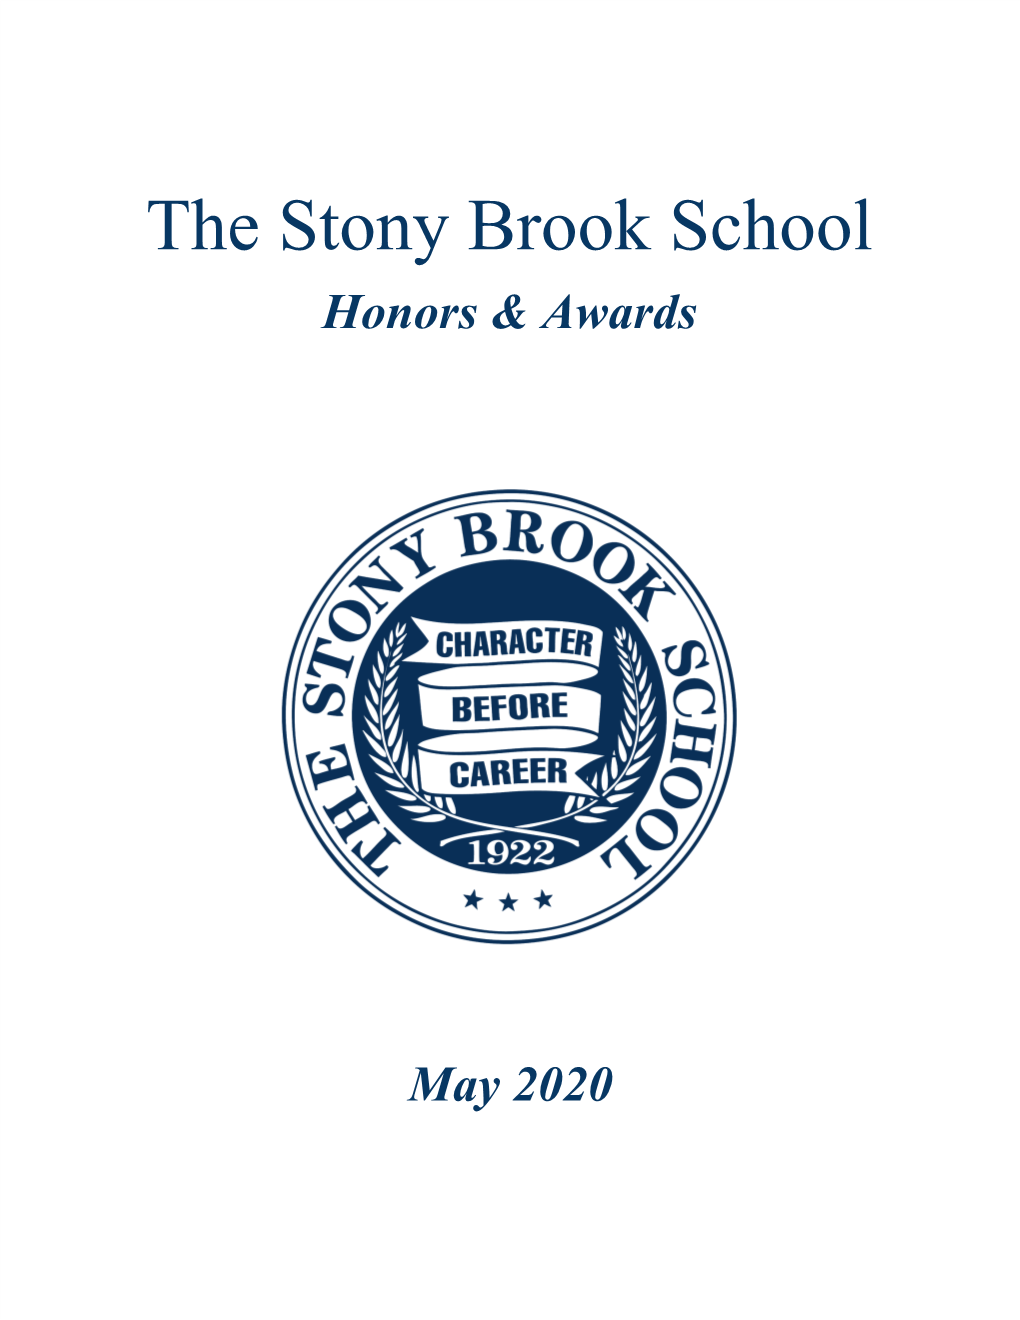 The Stony Brook School Honors & Awards